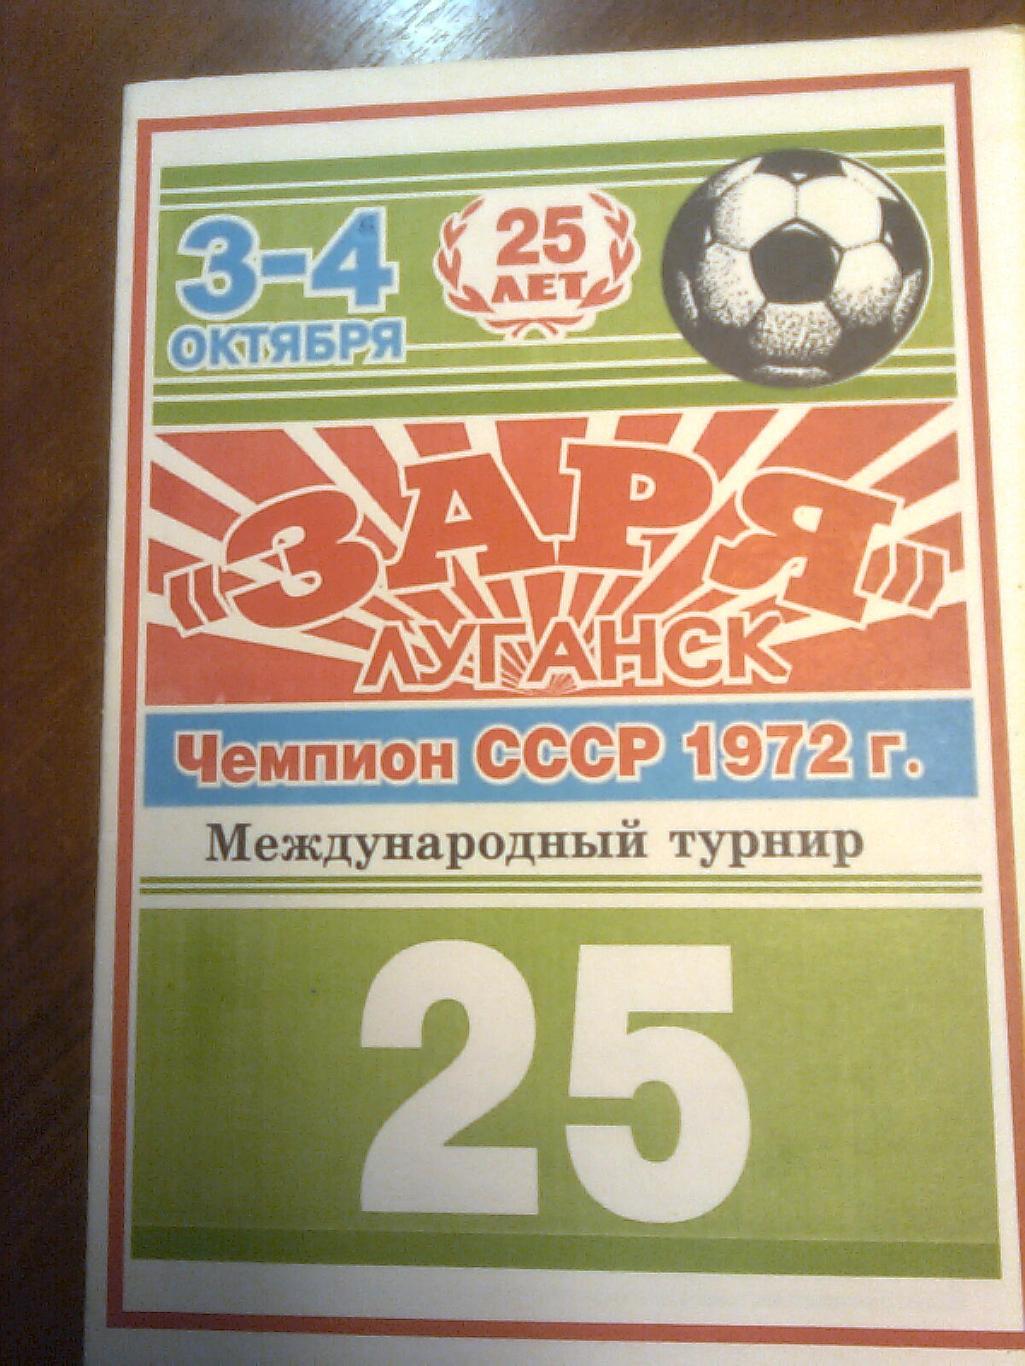 Заря(Луганск) Международный турнир ветеранов. 3-4 октября 1997 г.